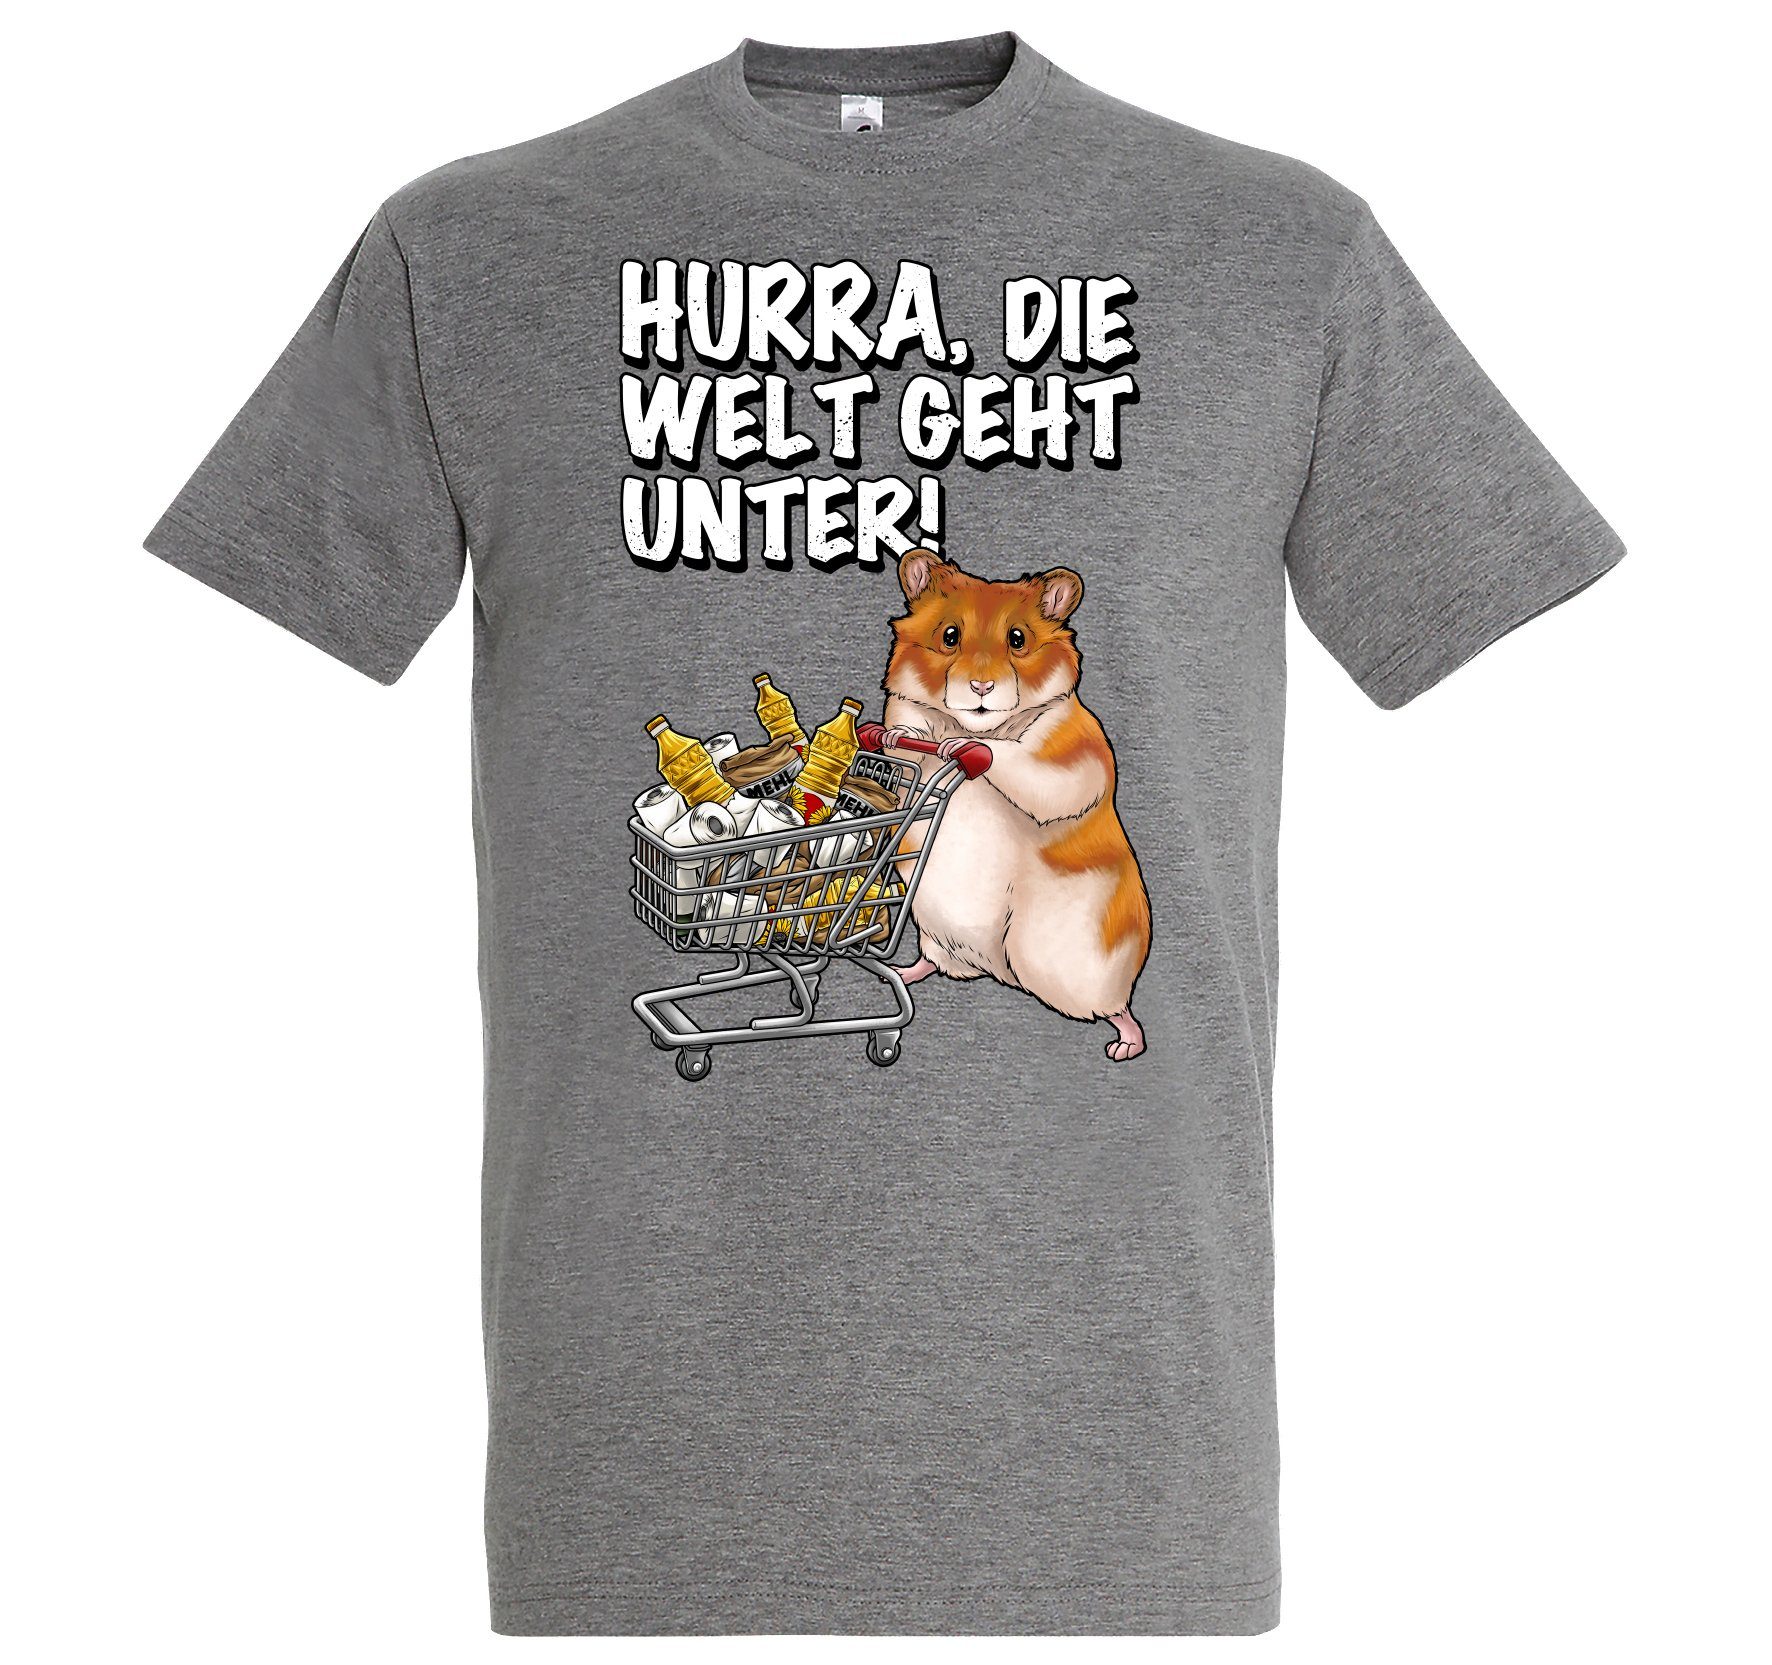 Hurra mit Print Die lustigem Youth Hamster Designz Grau Unter Herren Welt Spruch T-Shirt Geht Print-Shirt